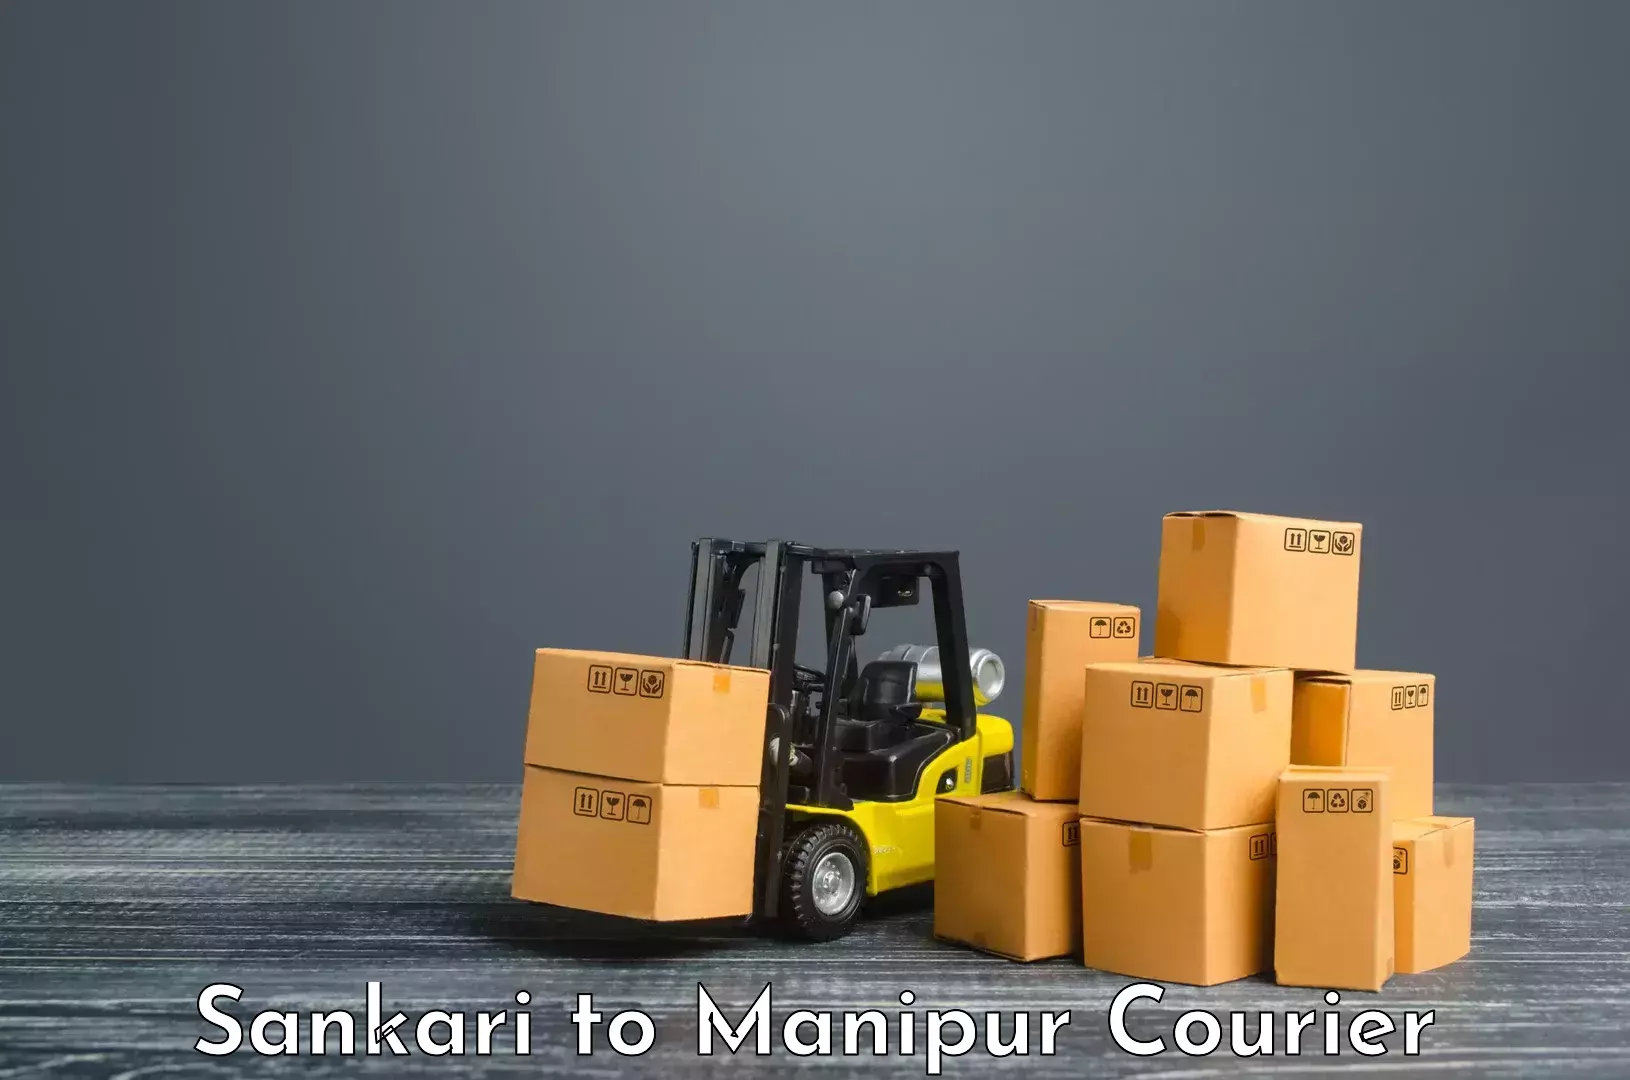 24-hour courier service Sankari to Kanti